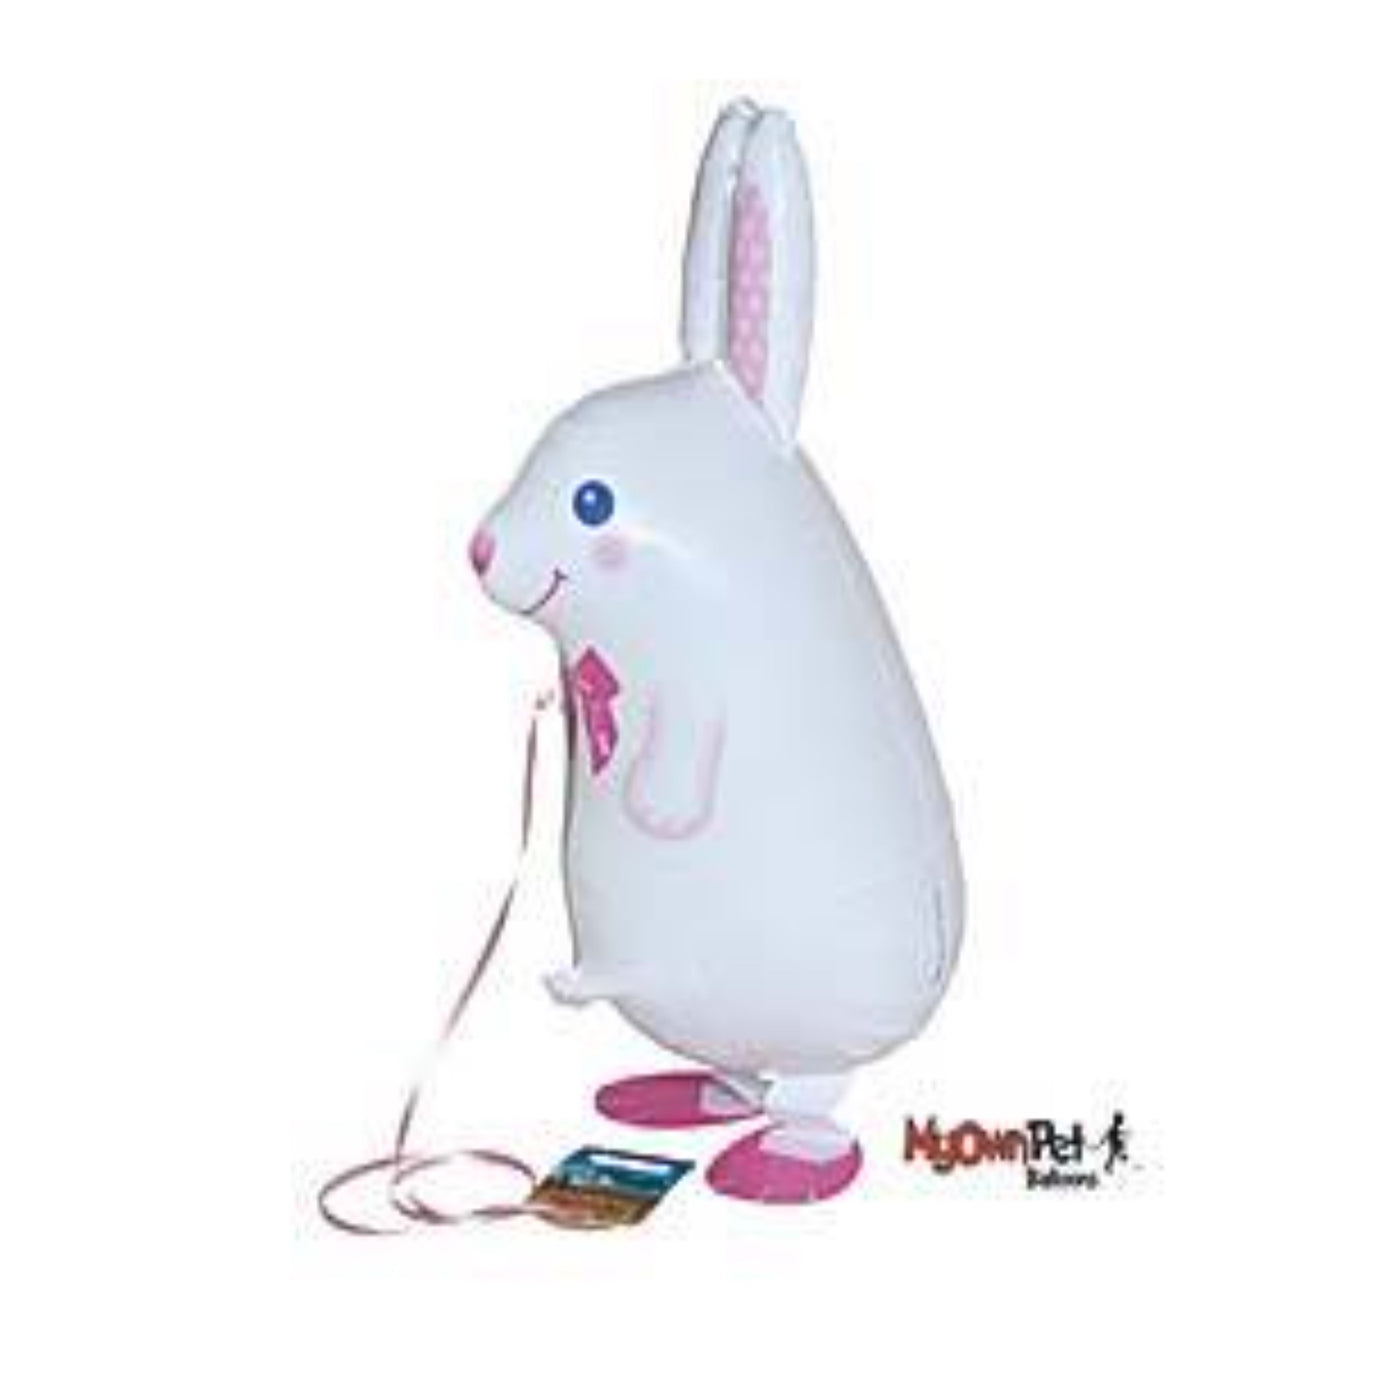 White Pet Bunny Balloon Toy